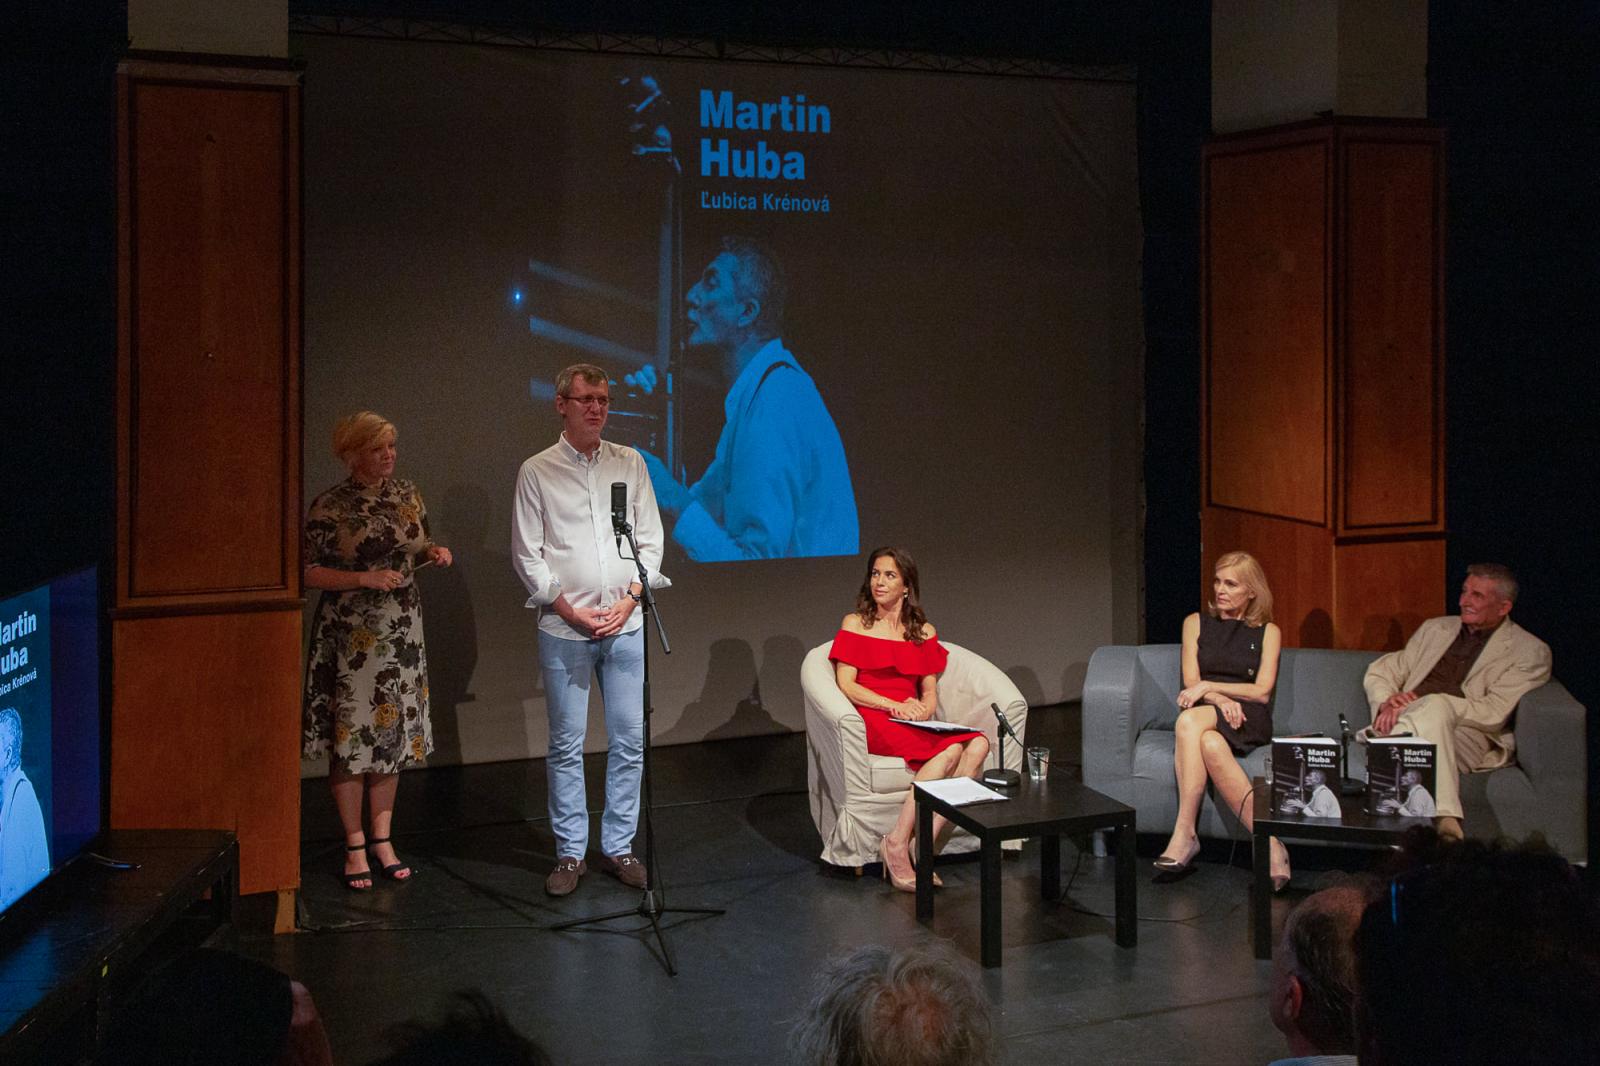 V Štúdiu 12 sme predstavili jednu z našich najnovších kníh MARTIN HUBA autorky Ľubice Krénovej. Diskusia priniesla nádherné a silné posolstvá a niesla sa spomienkami na herecké a režijné kreácie Martina Hubu.